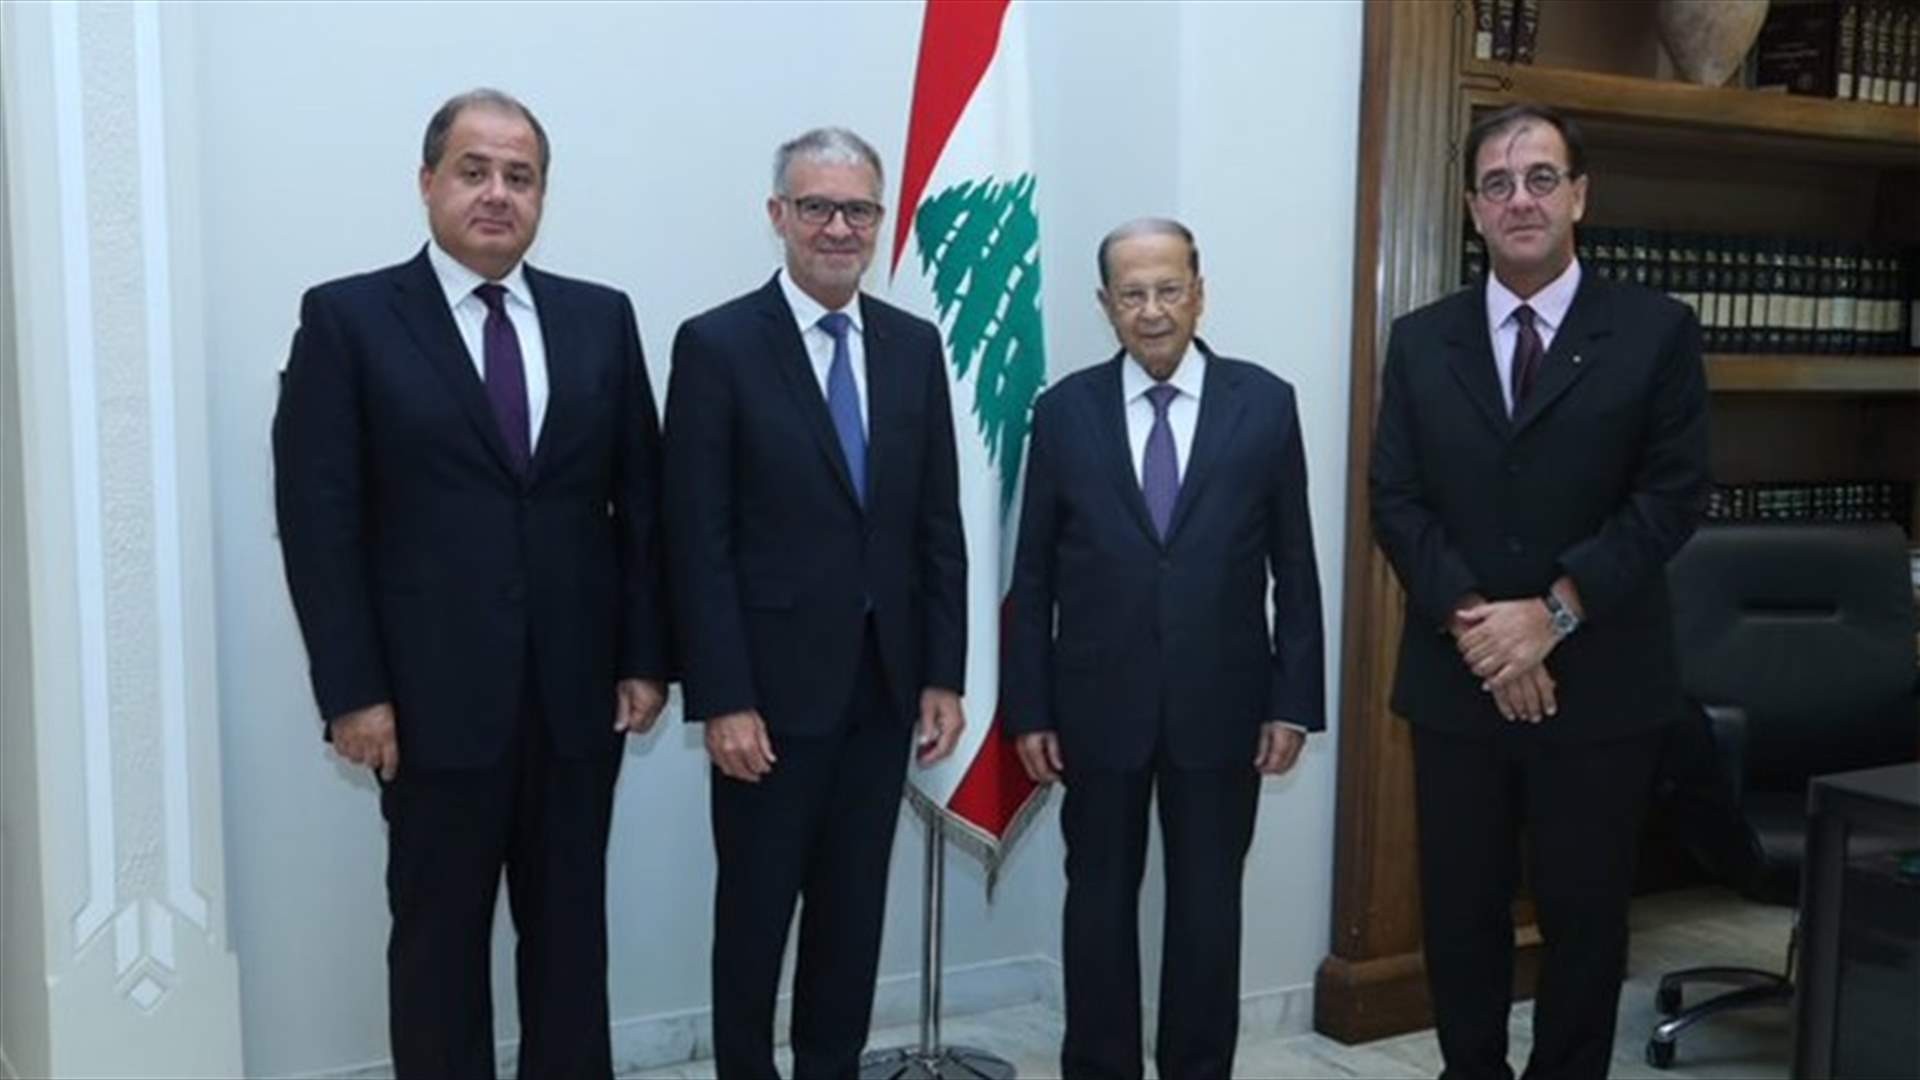 الرئيس عون: التعاون بين المجلسين الاقتصاديين اللبناني والفرنسي يطور الاداء